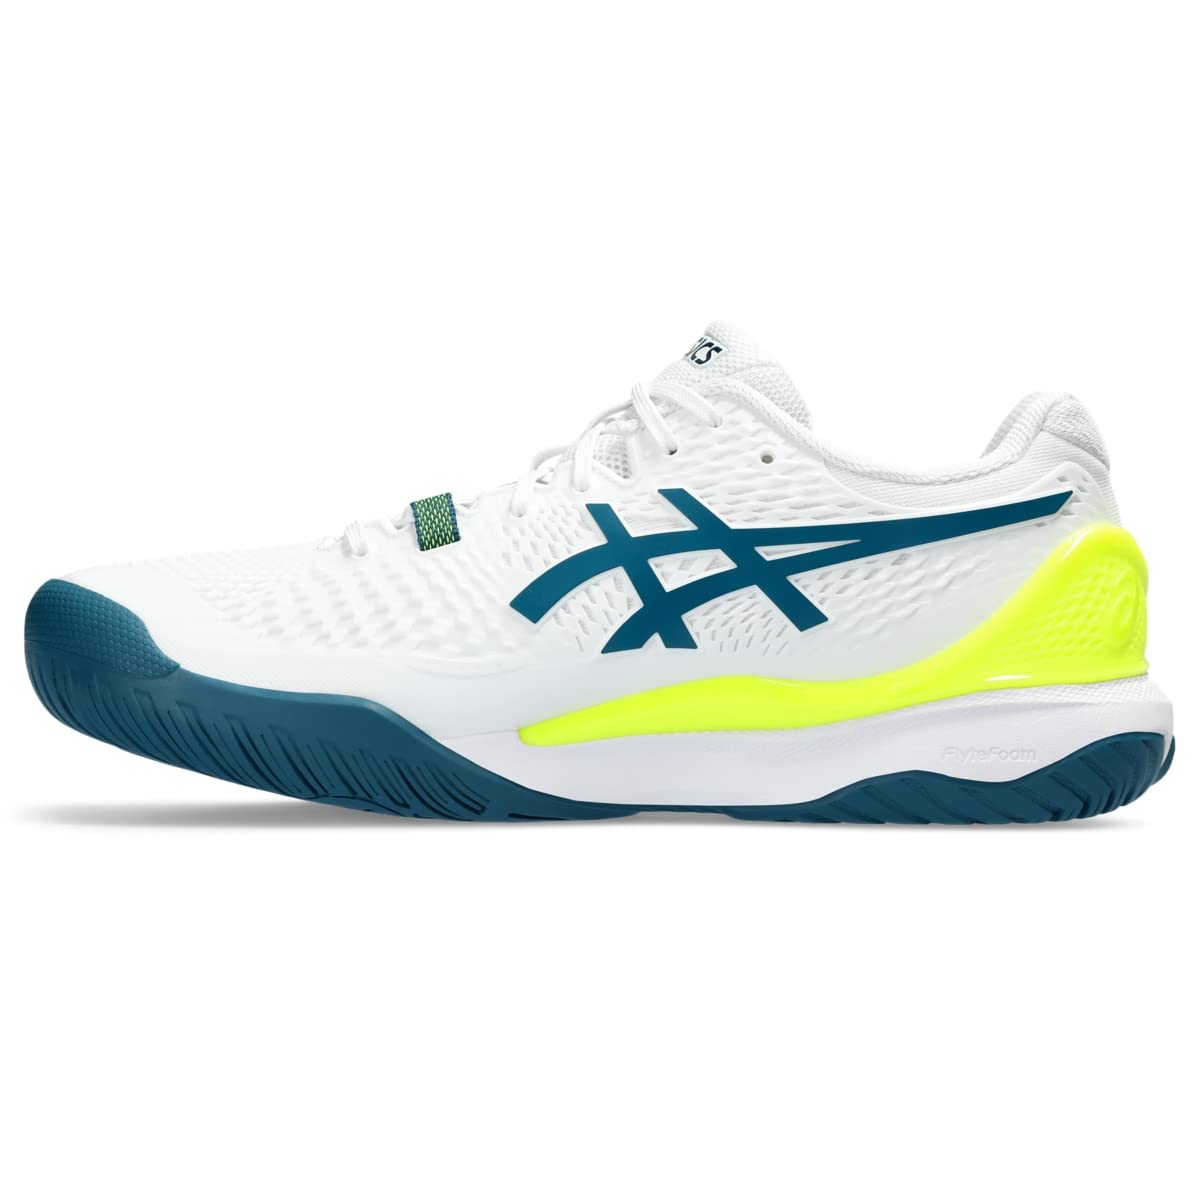 Asics Мужские теннисные туфли Gel-Resolution 9